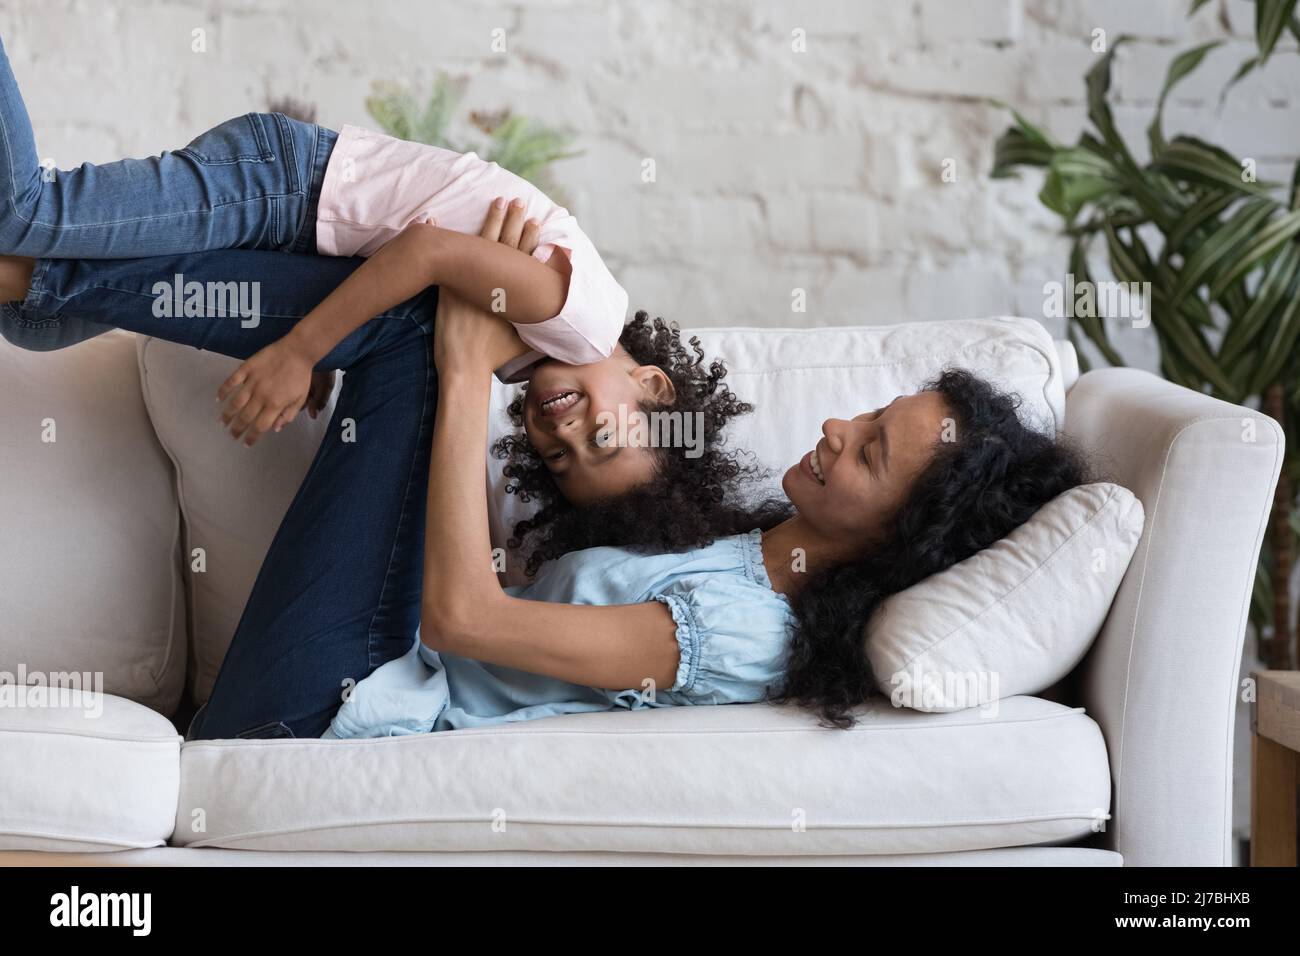 Alegre Negro mamá y niño hija jugando juegos activos Foto de stock